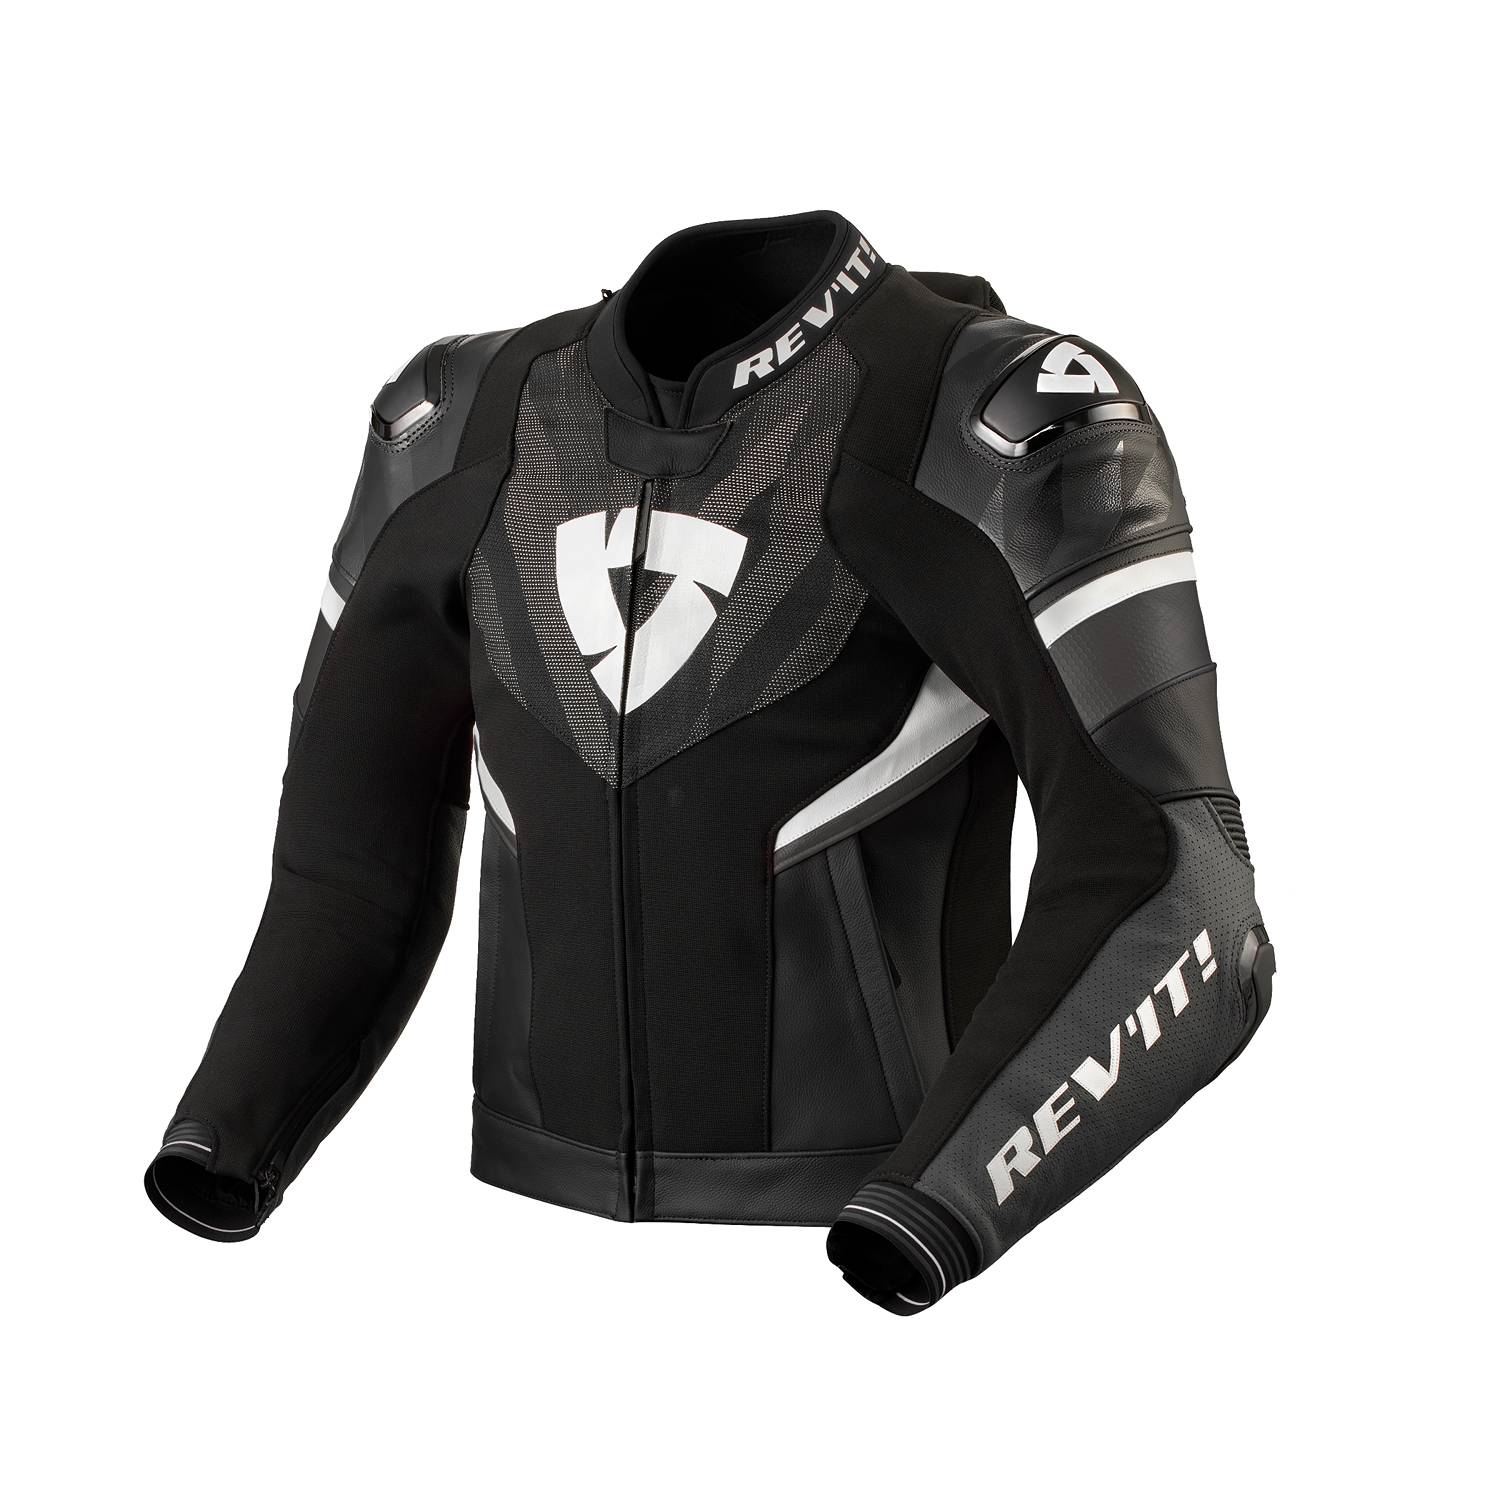 Image of REV'IT! Hyperspeed 2 Pro Jacket Black Anthracite Size 48 EN